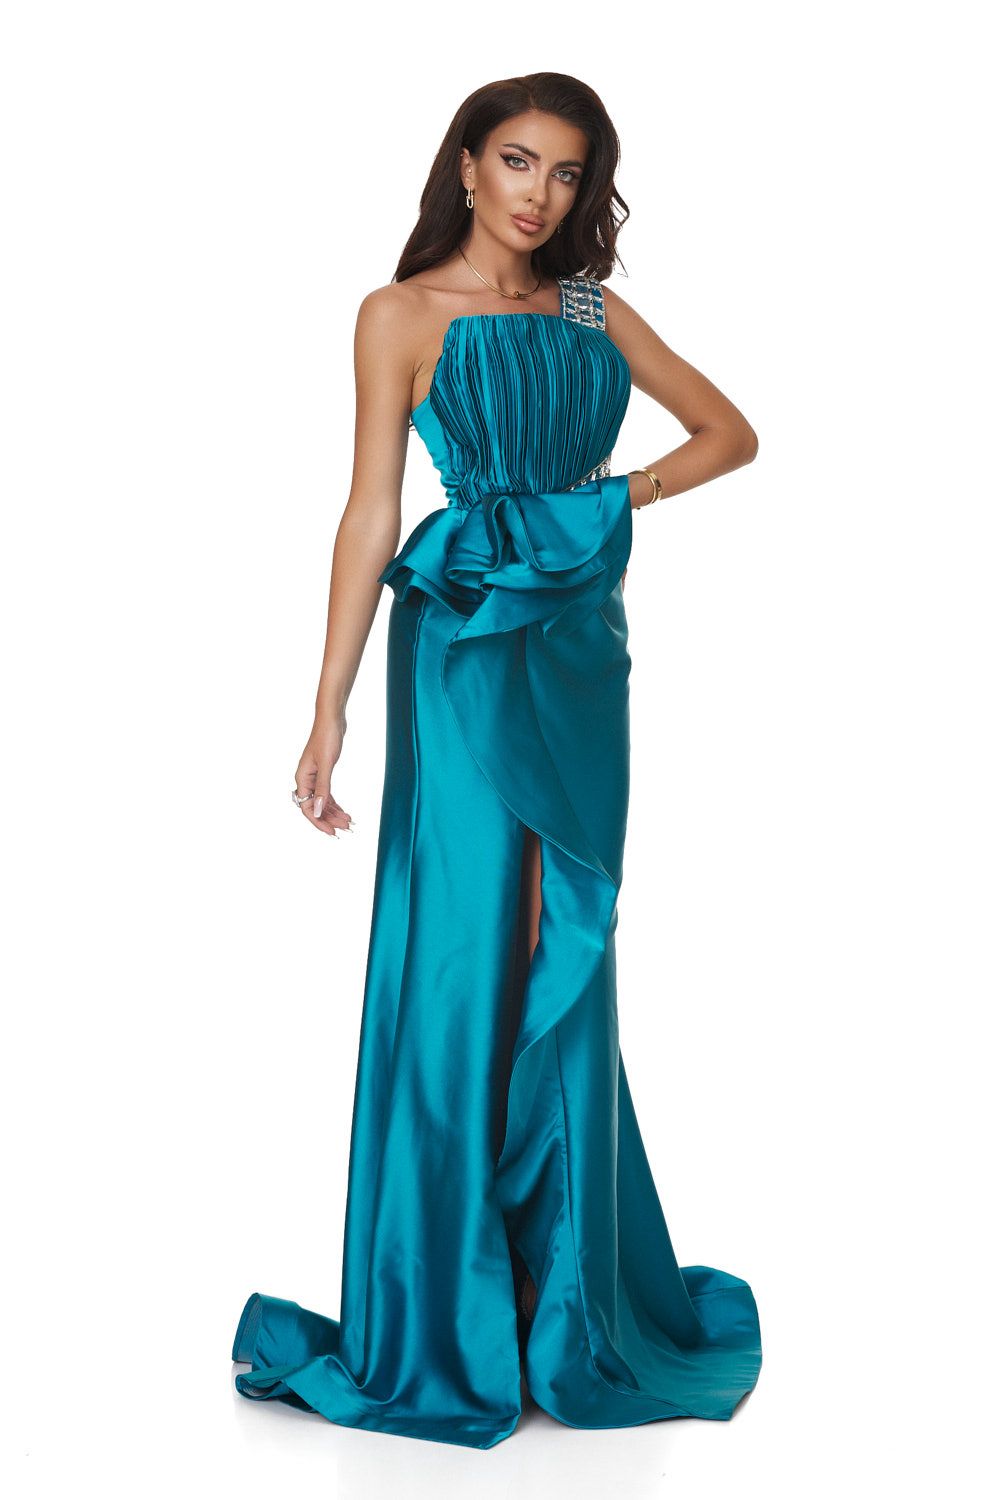 Long turquoise taffeta dress for women, Felssia Bogas